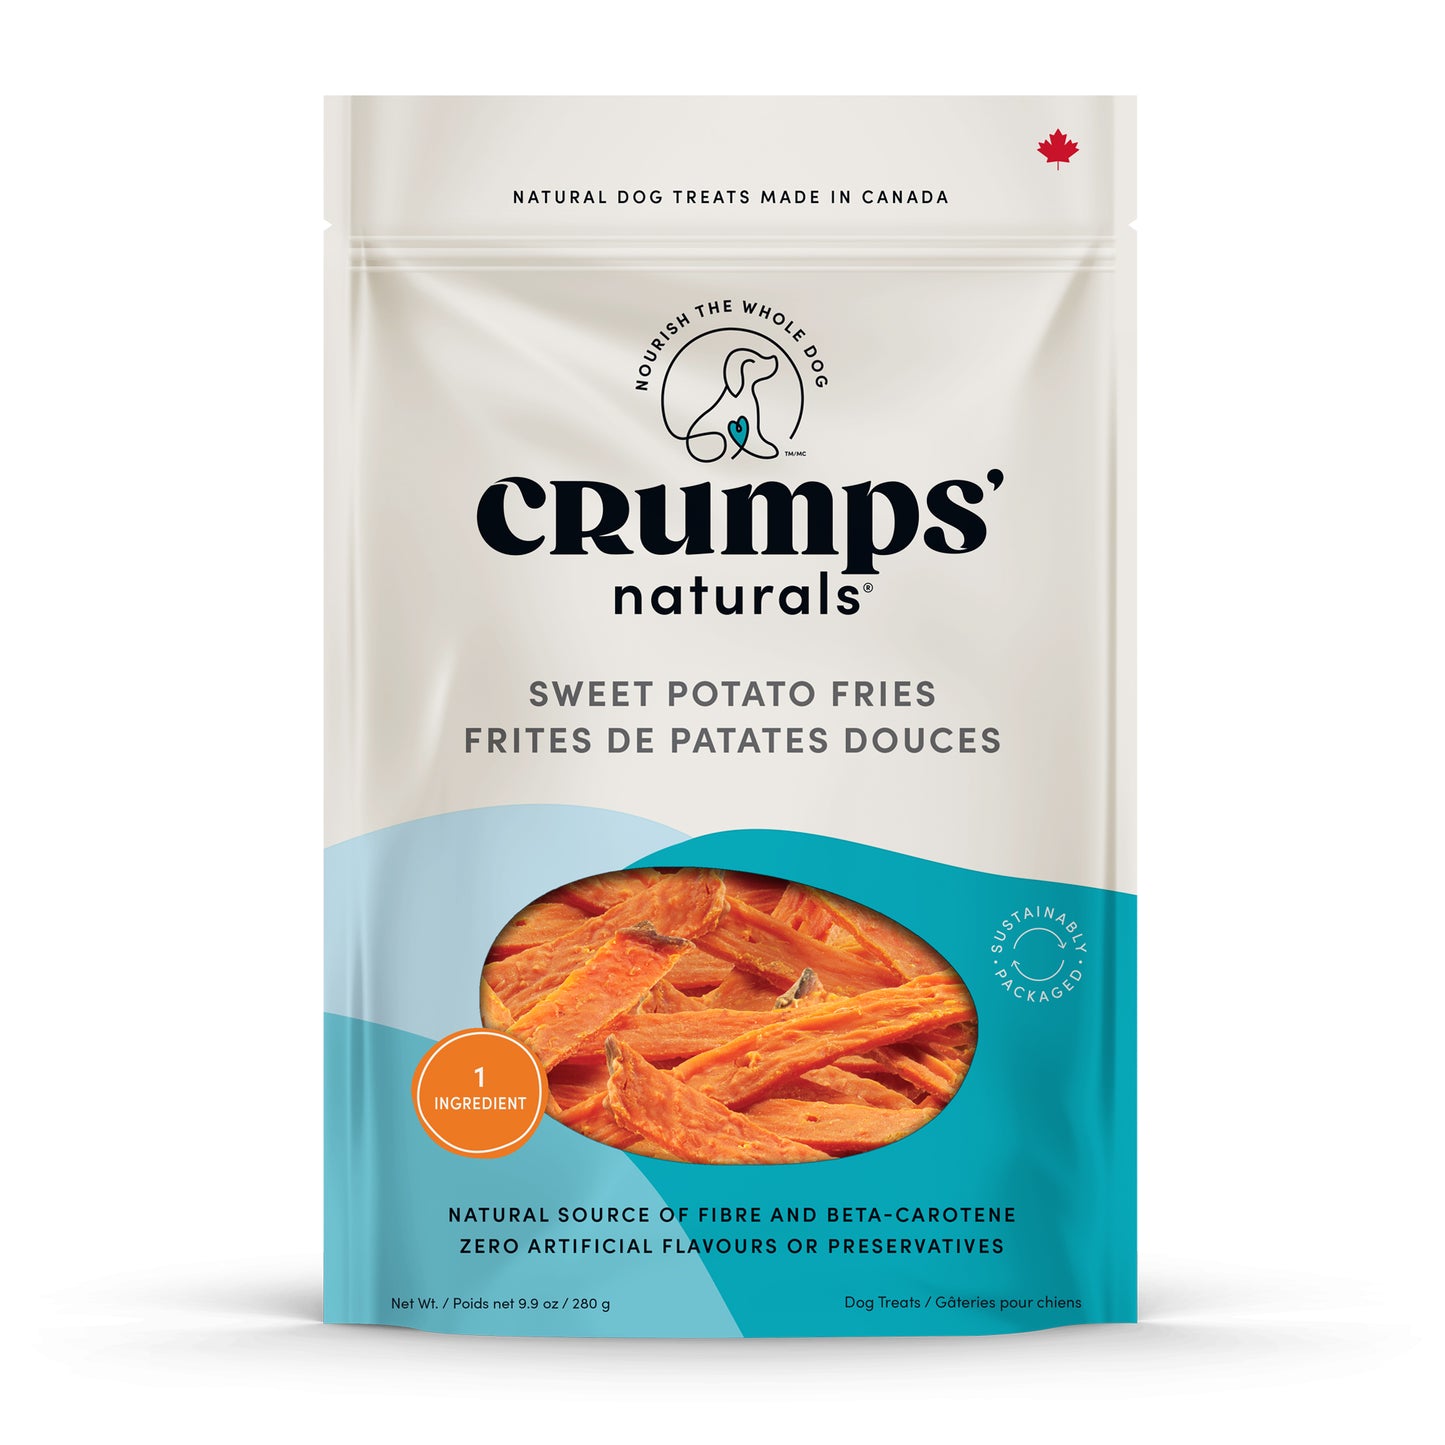 Sweet Potato Fries - Crumps' Naturals – Crumps' Naturals U.S